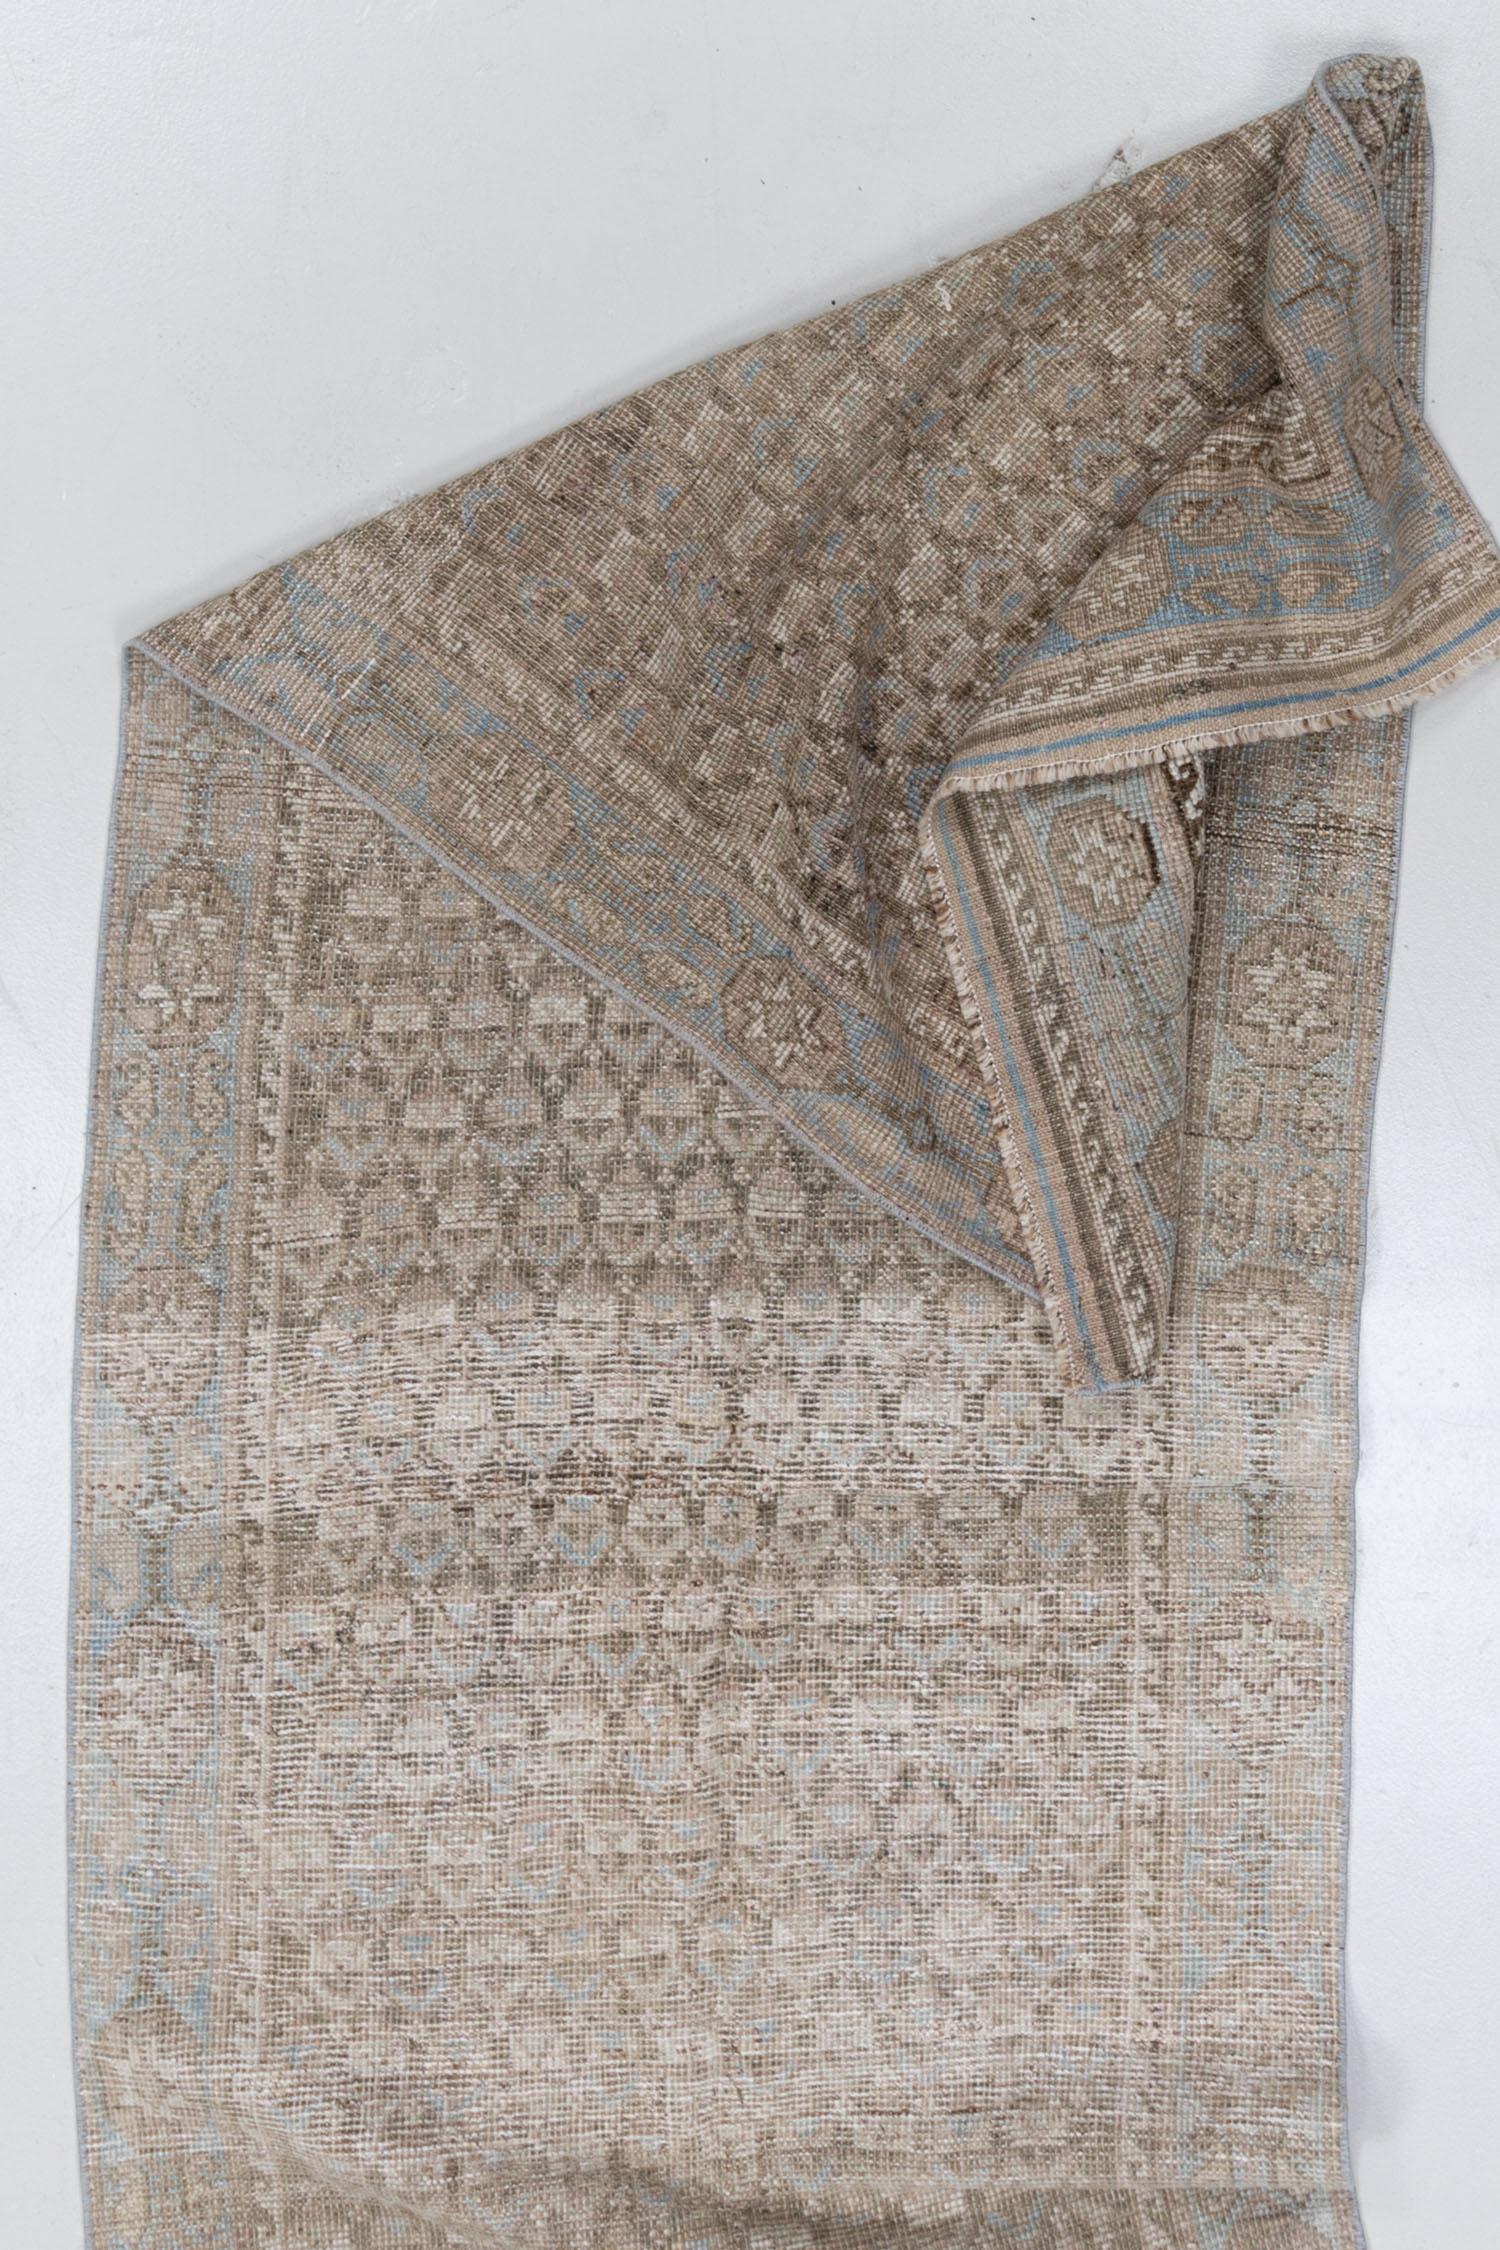 Wool Vintage Persian Kurd Runner Rug